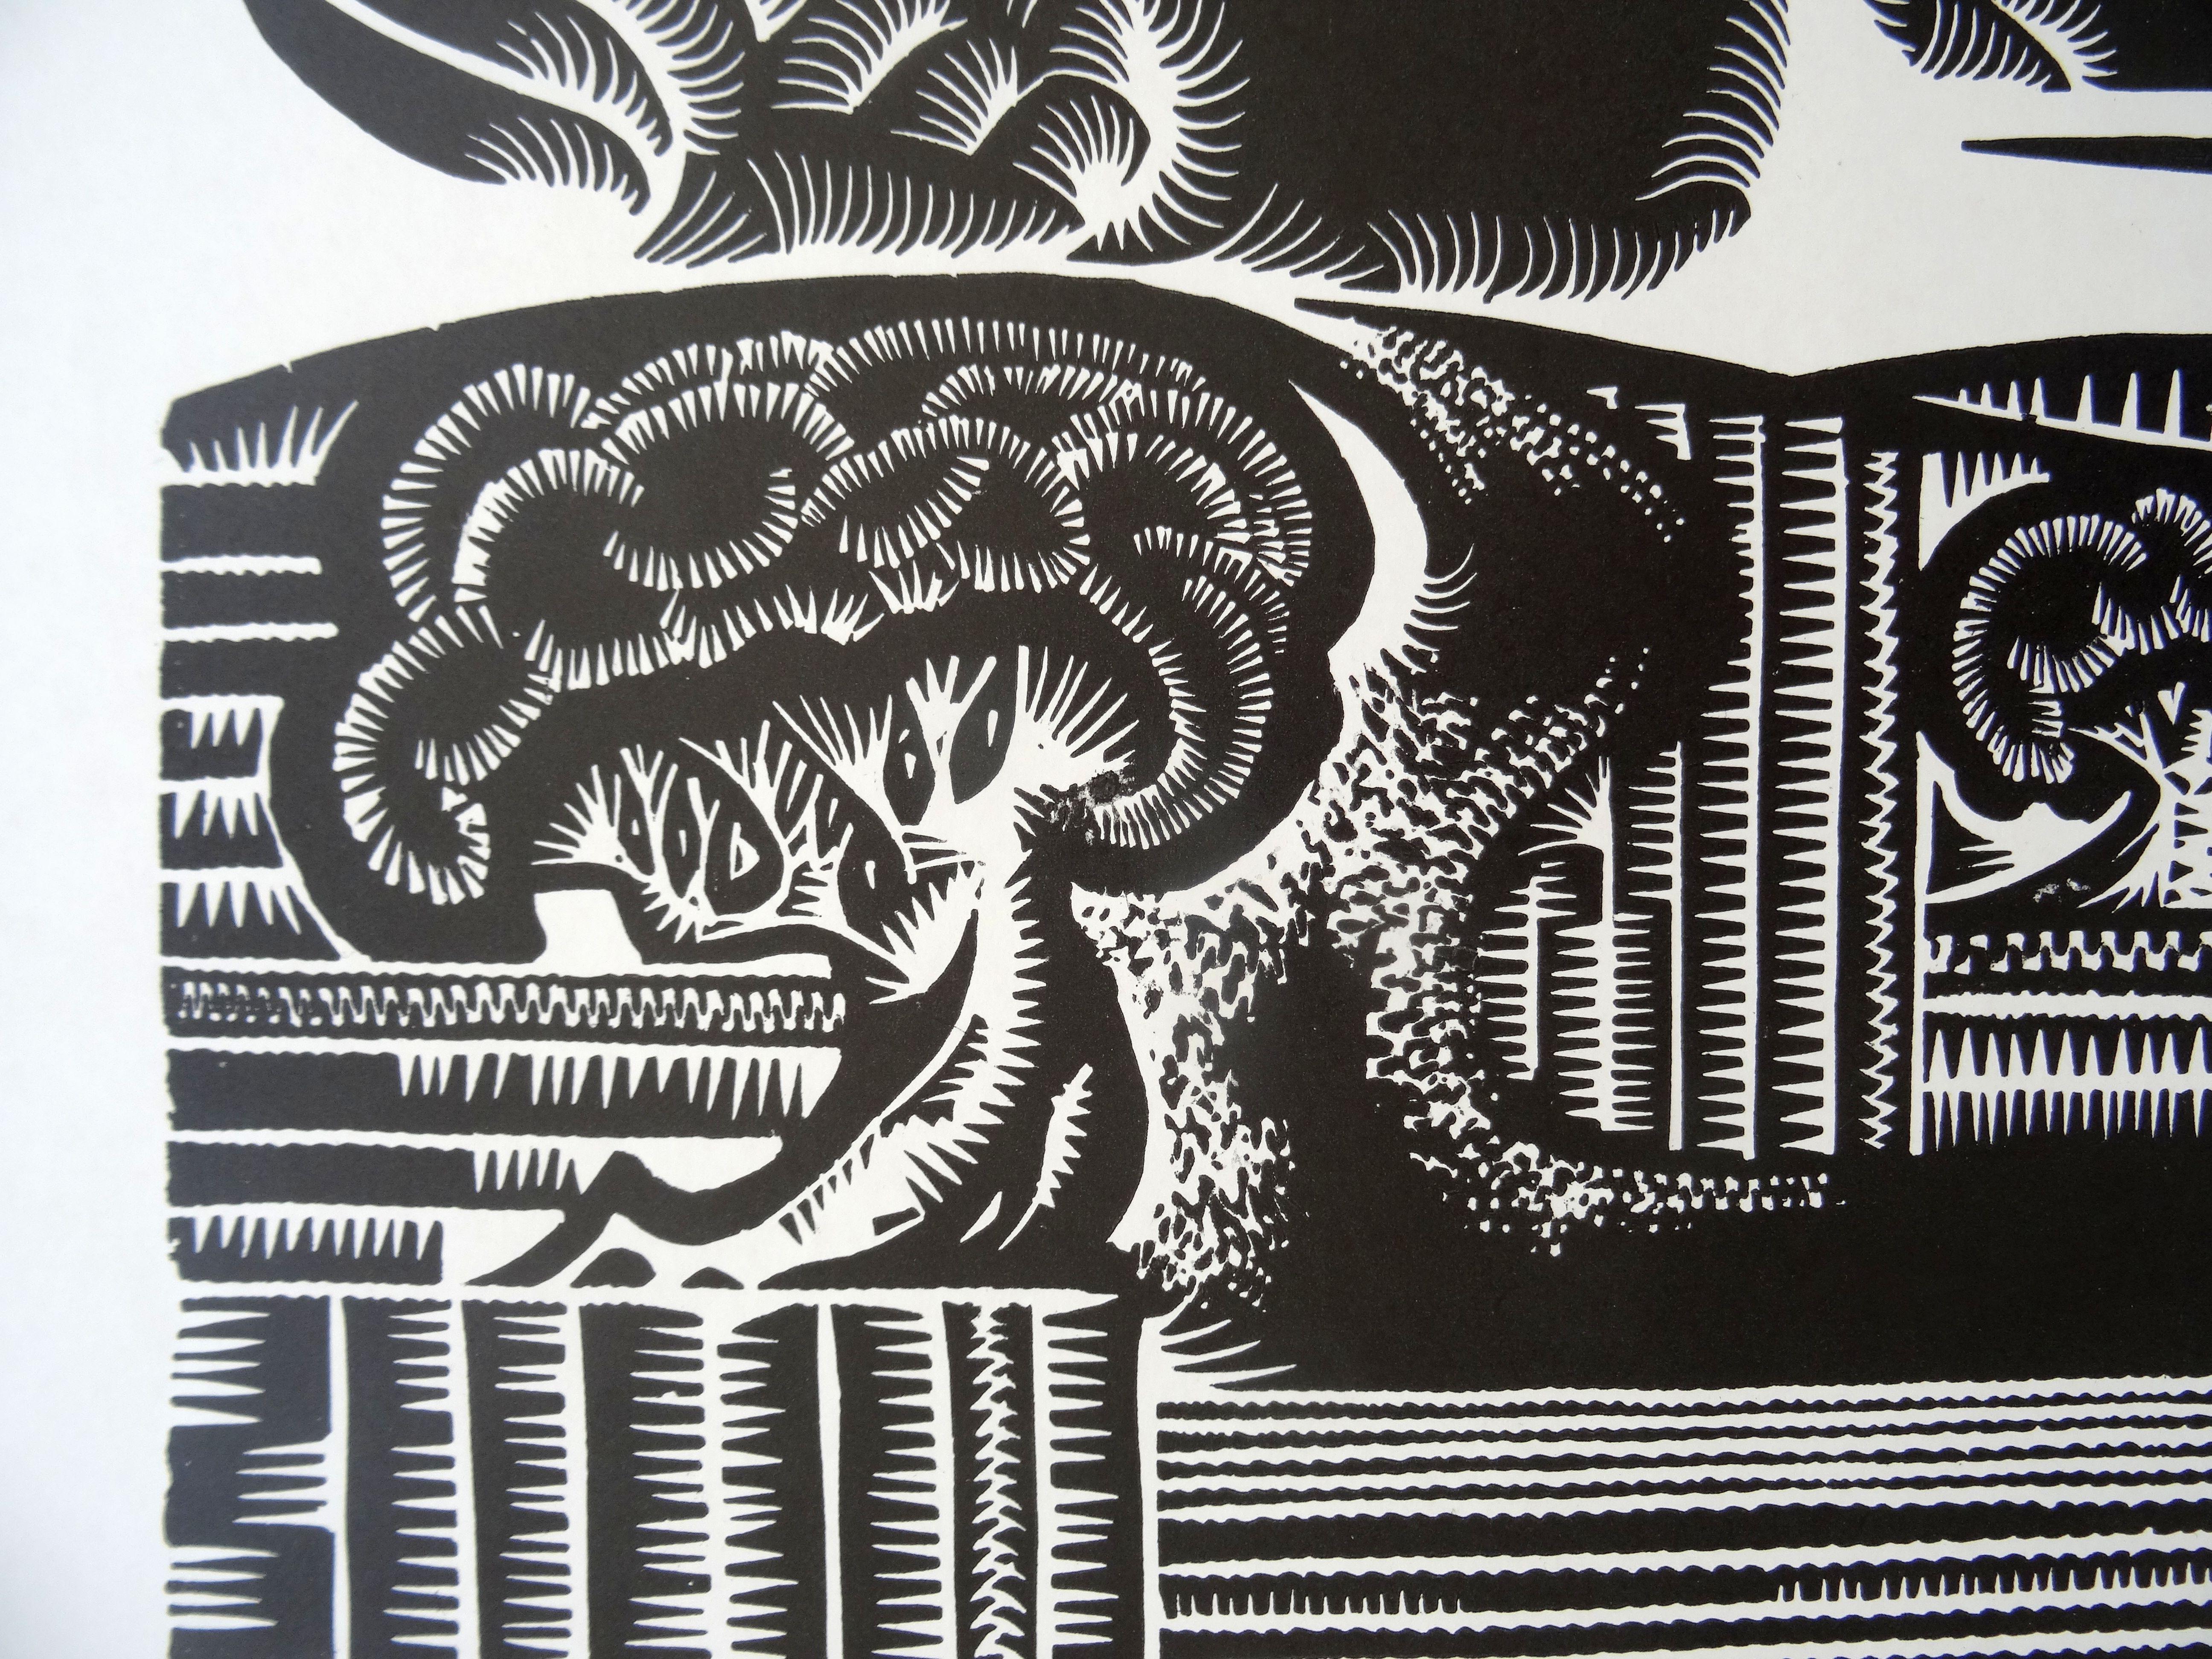 Woodcocks Rückkehr. 1970, Papier, Linolschnitt, Druckgröße 52x55 cm; insgesamt 70x65 cm (Geometrische Abstraktion), Print, von Dainis Rozkalns